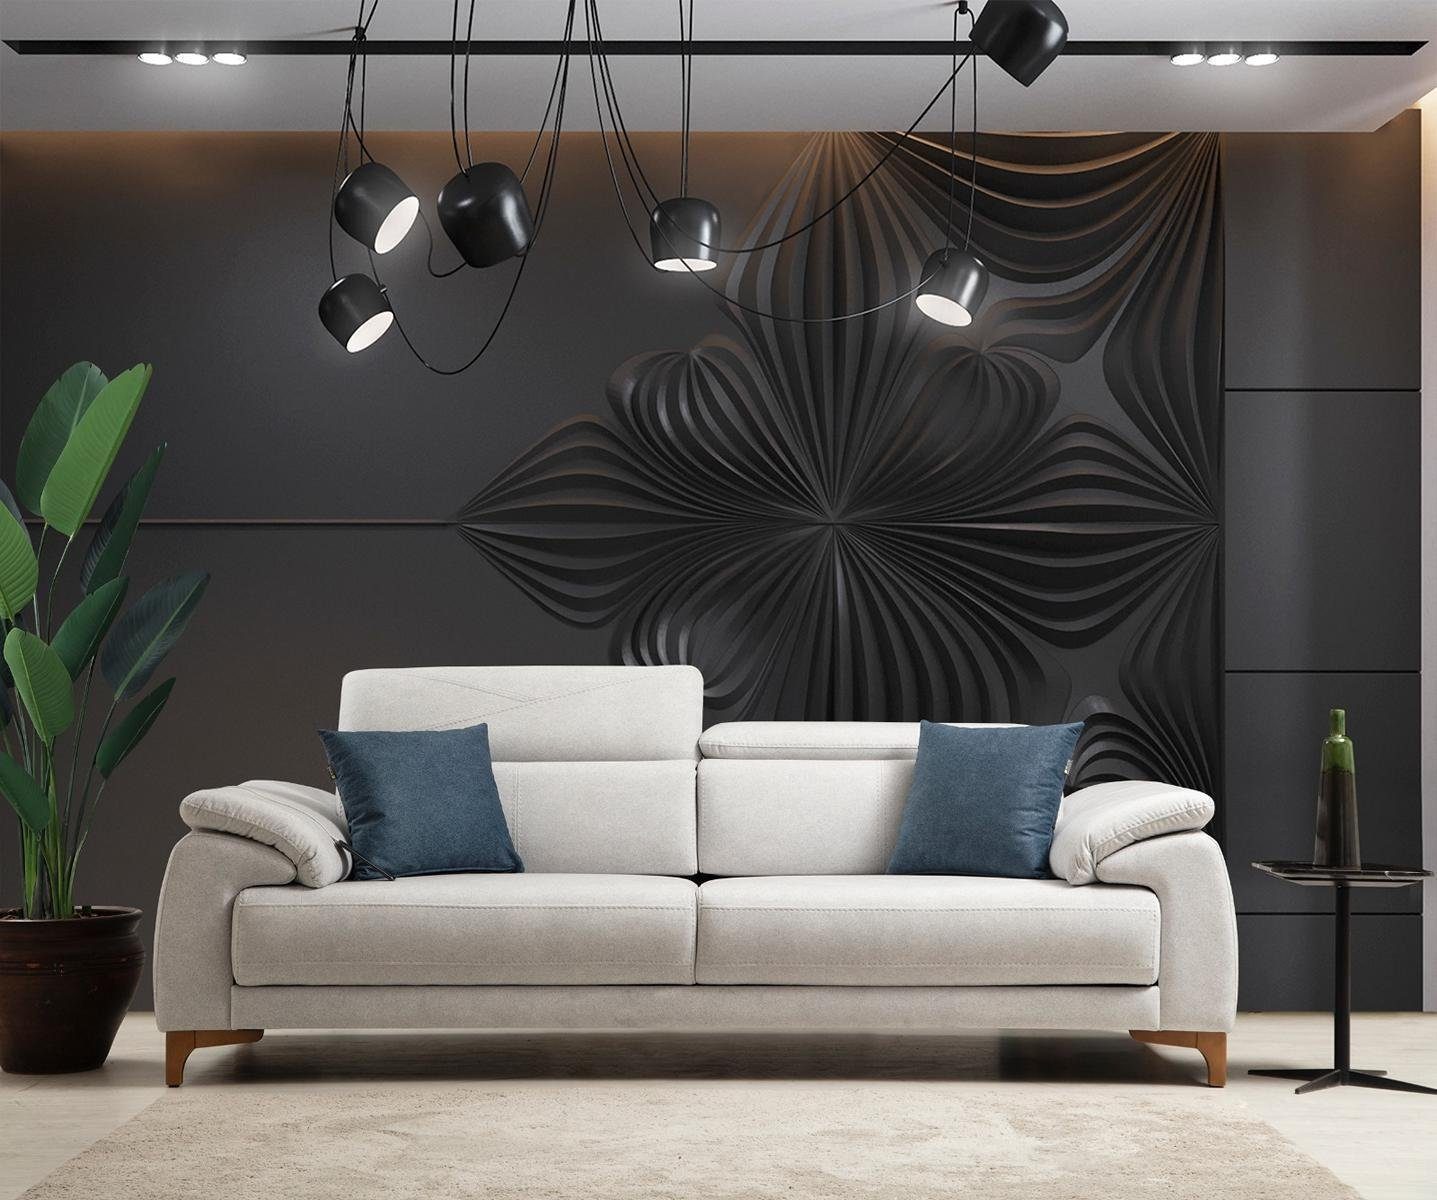 JVmoebel Teile, 1 Polstersofa Wohnzimmer Design Modern in Möbel Neu, Made 3-Sitzer Sofa Luxus Europa Grau